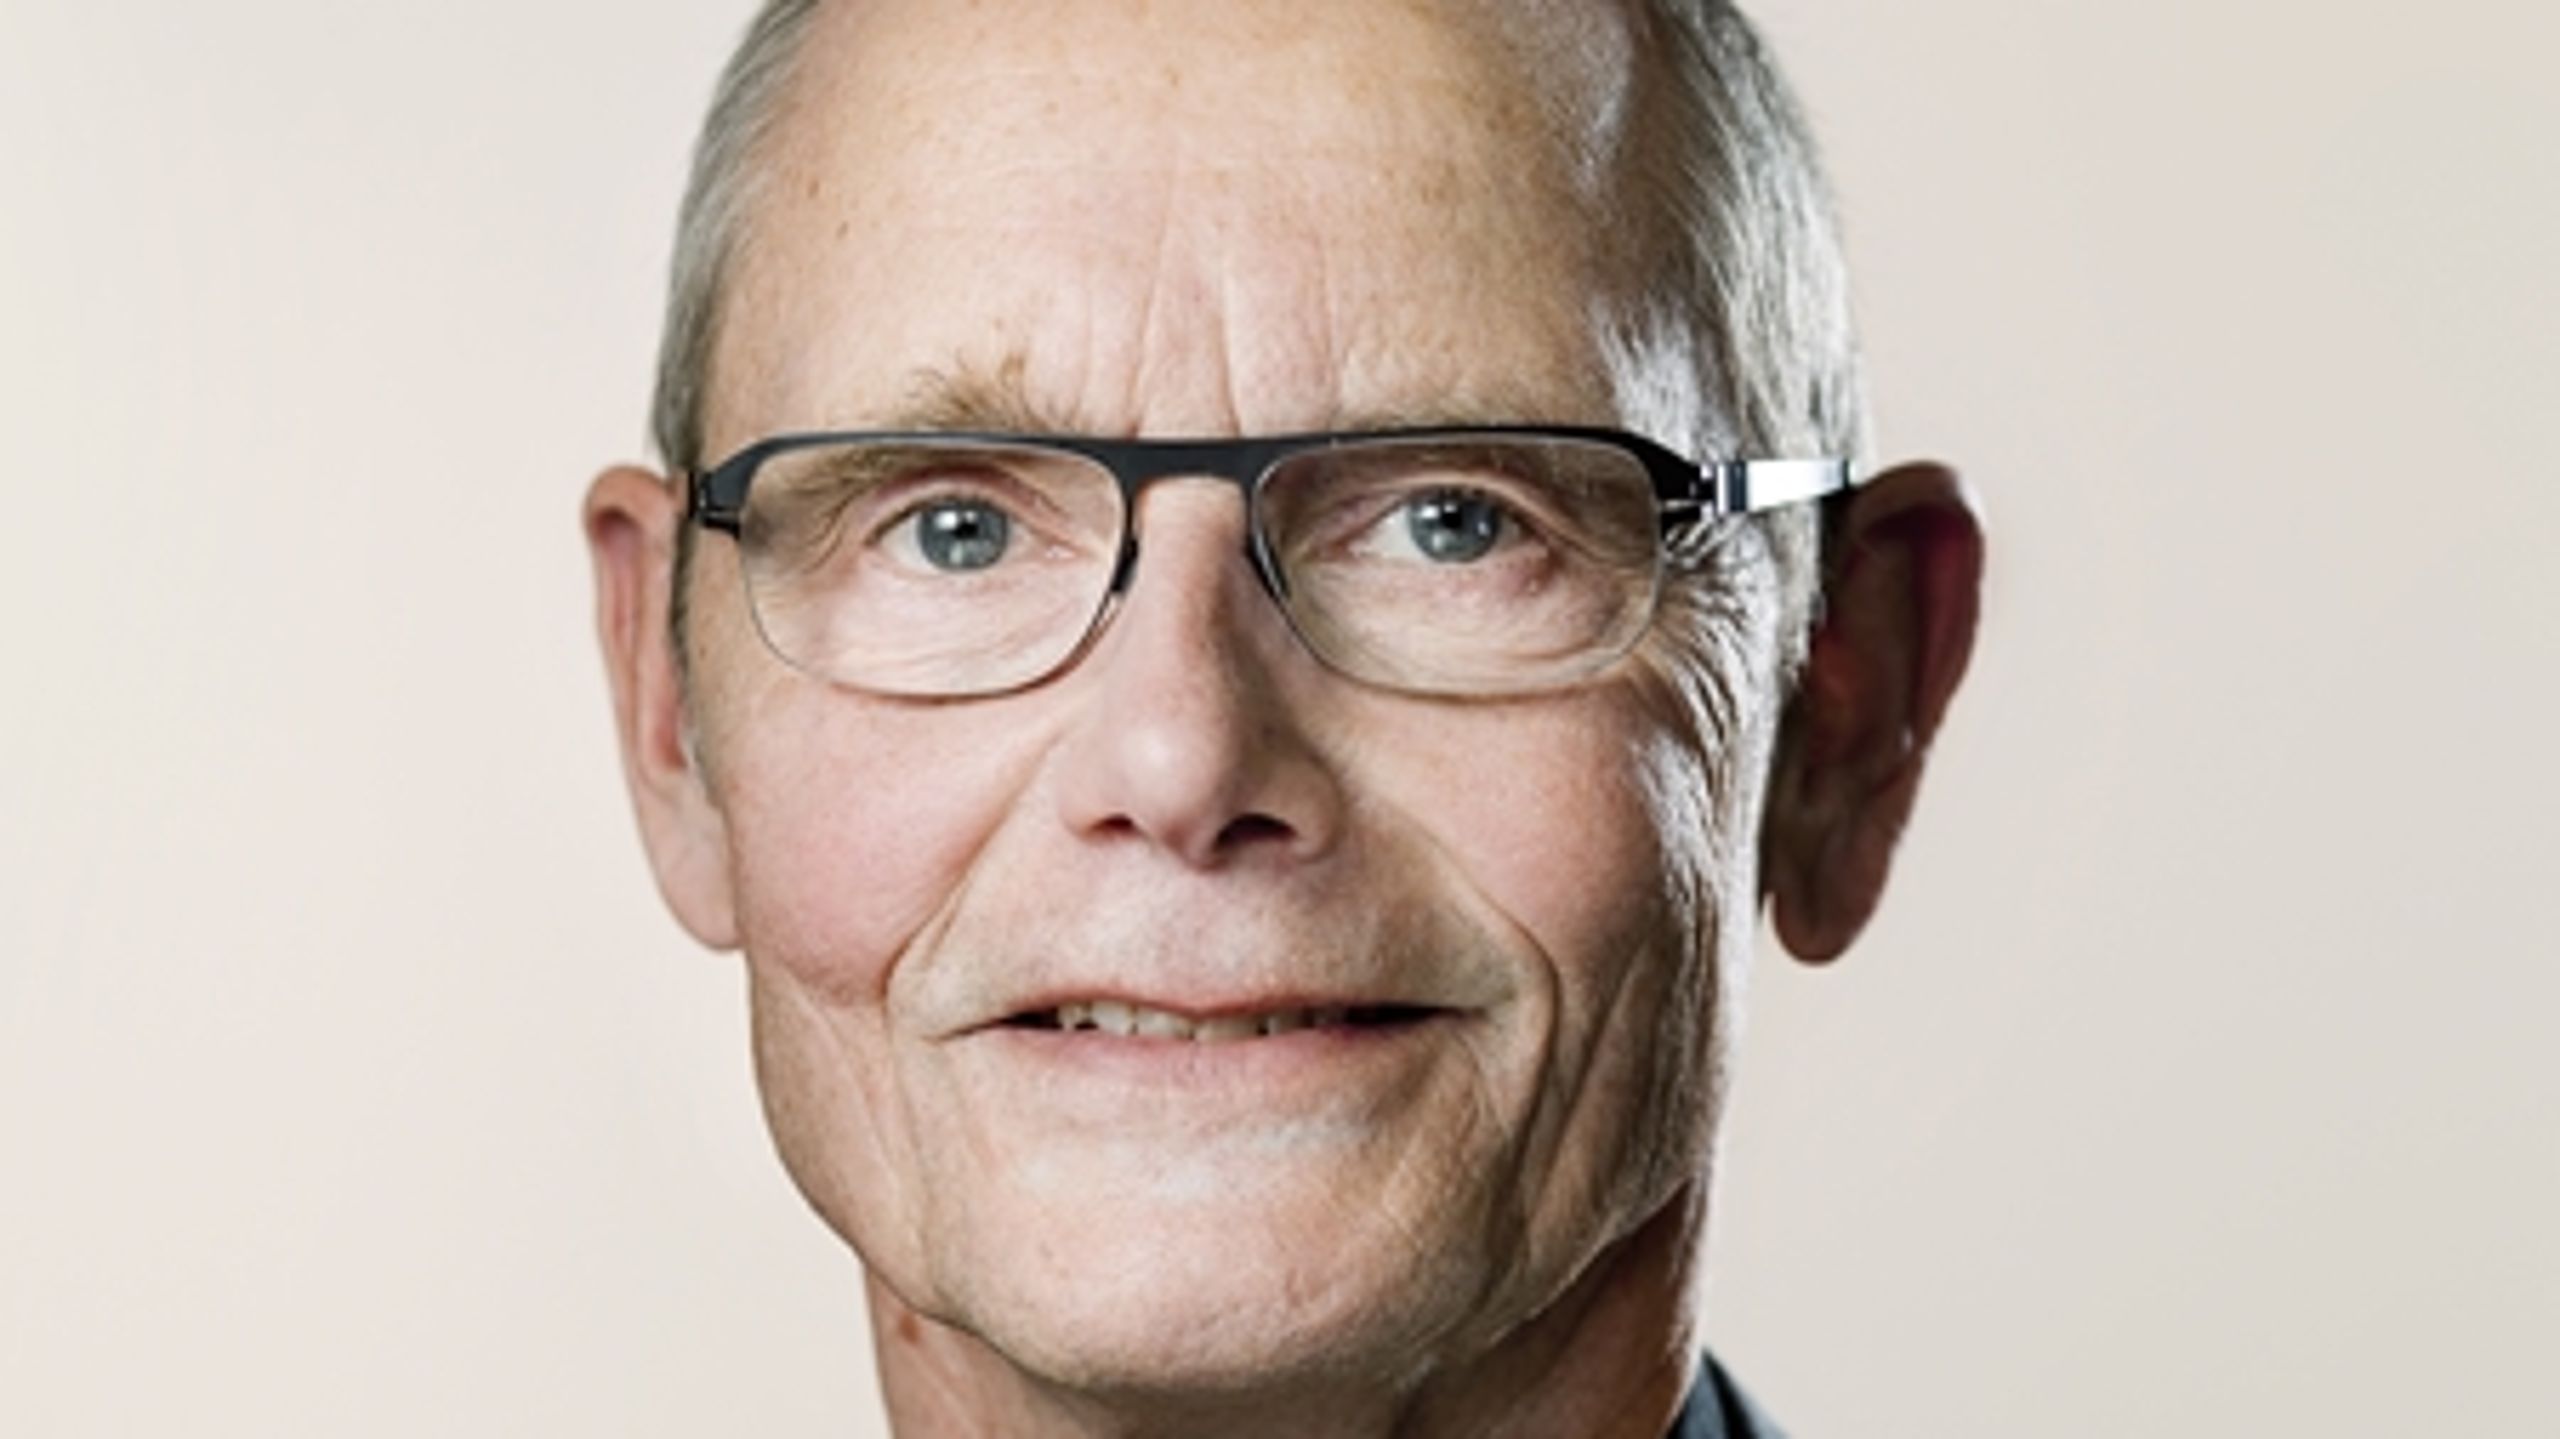 Aftalen om en justering af udligningsordningen fra 2012 betyder ifølge Enhedslisten kommunalordfører Finn Sørensen, at de og SF skal med i forhandlinger om en reform af refusionssystemet.